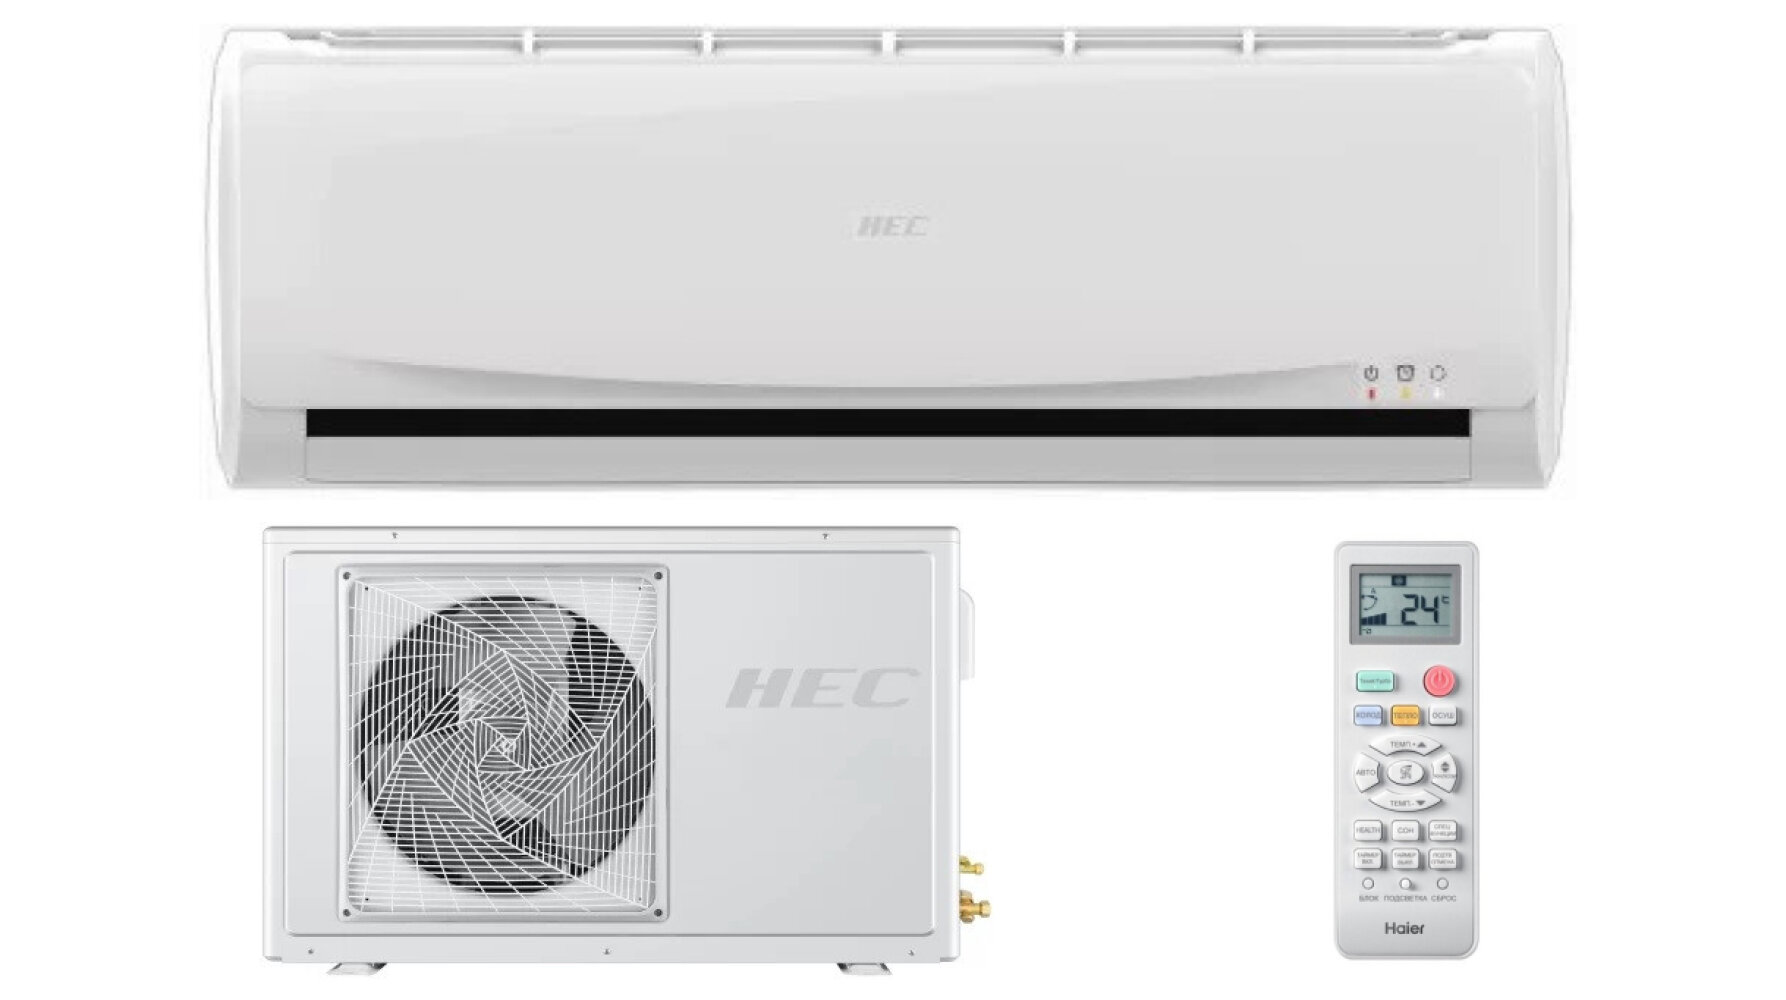 Сплит-система HEC HEC-09HNC03/R3(IN)/HEC-09HNC03/R3(OUT) Business DC Inverter